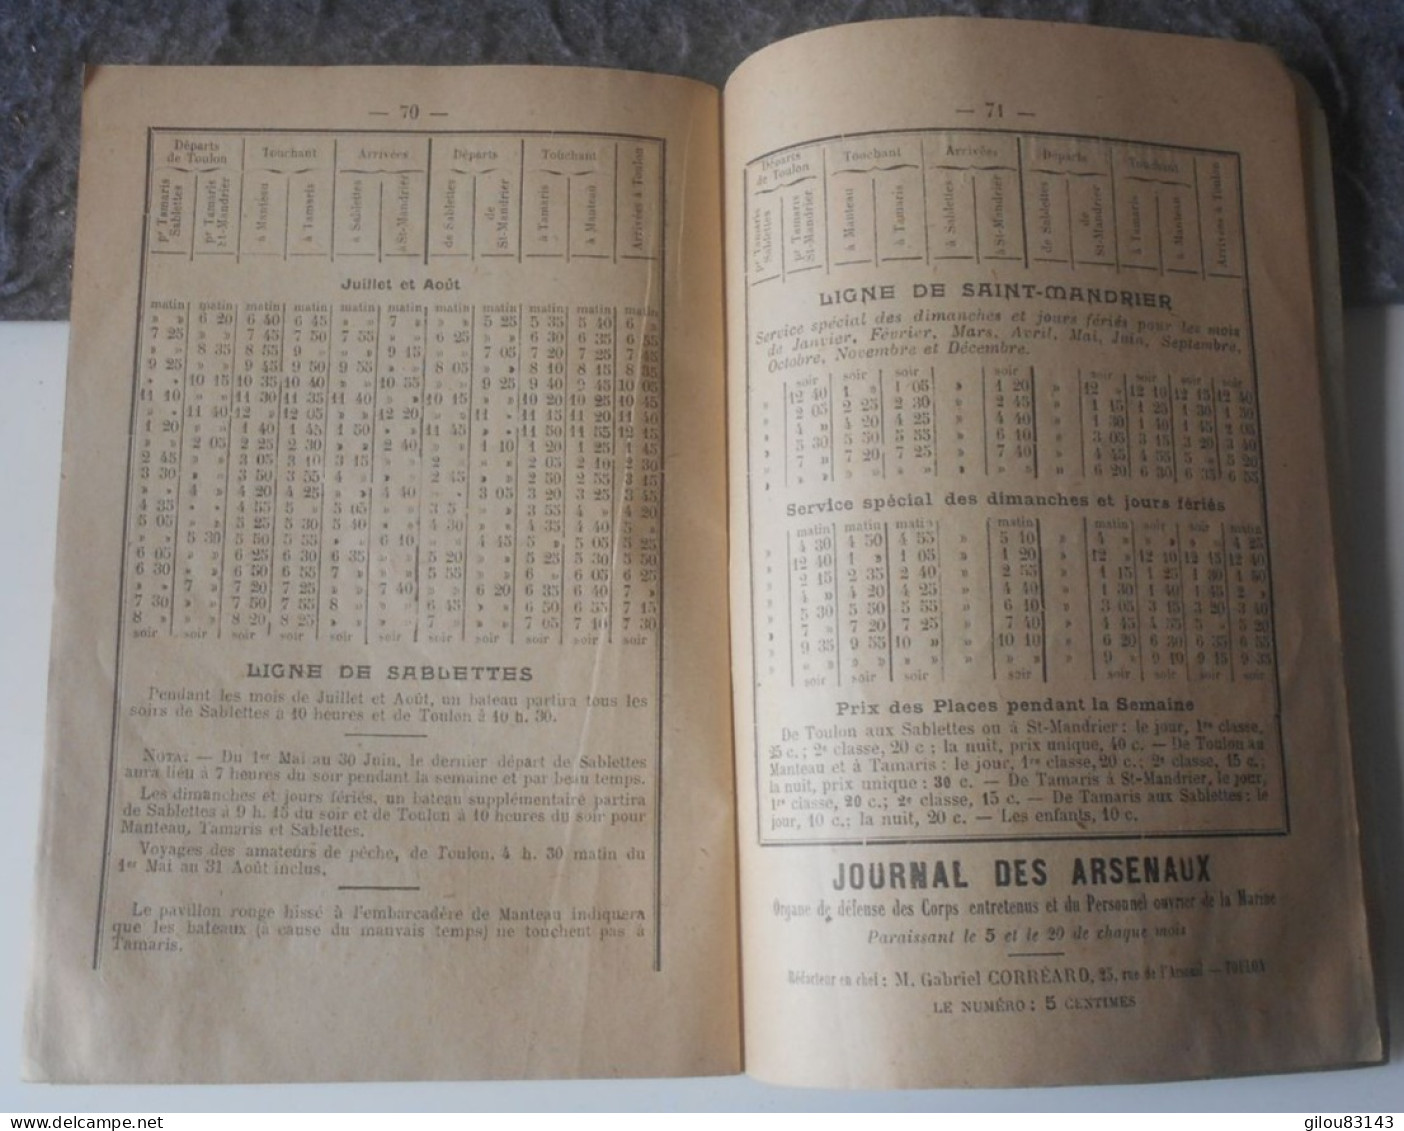 Indicateur de la Republique du Var, chemins de fer, renseignements, horaires, publicités, 1912, (80 pages).